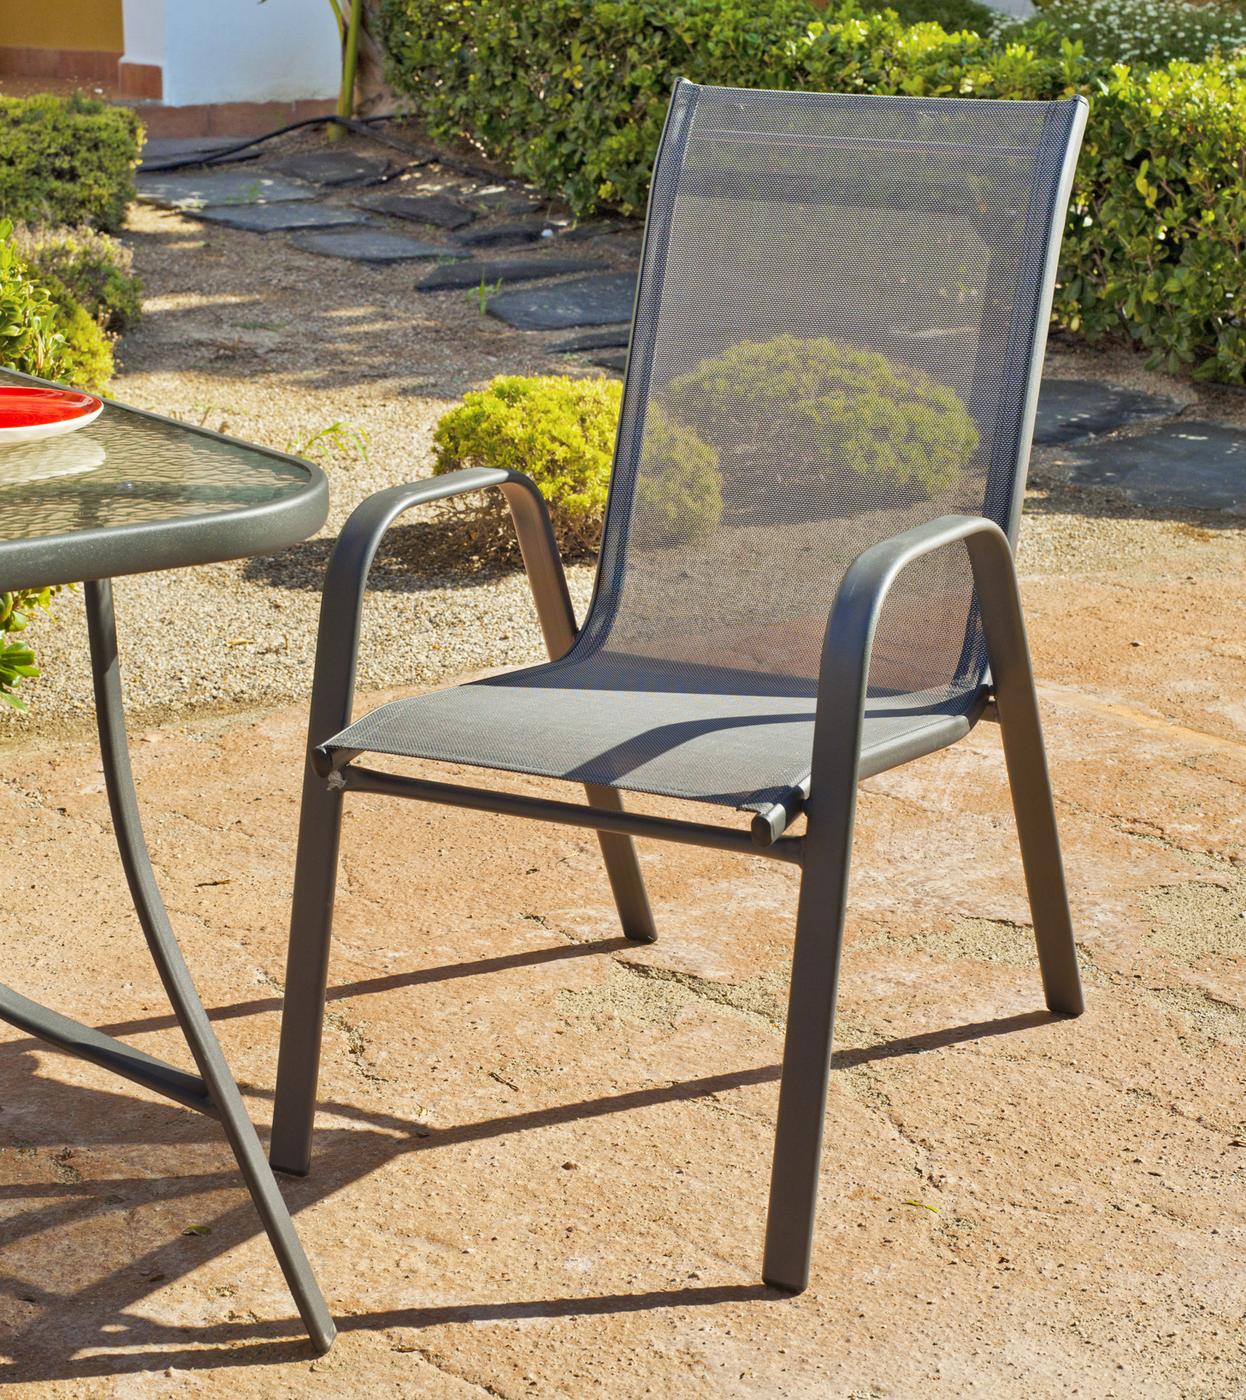 Conjunto Acero Sulam-105 - Conjunto de acero color antracita: mesa redonda de 105 cm, con tapa de cristal templado + 4 sillones apilables de acero y textilen